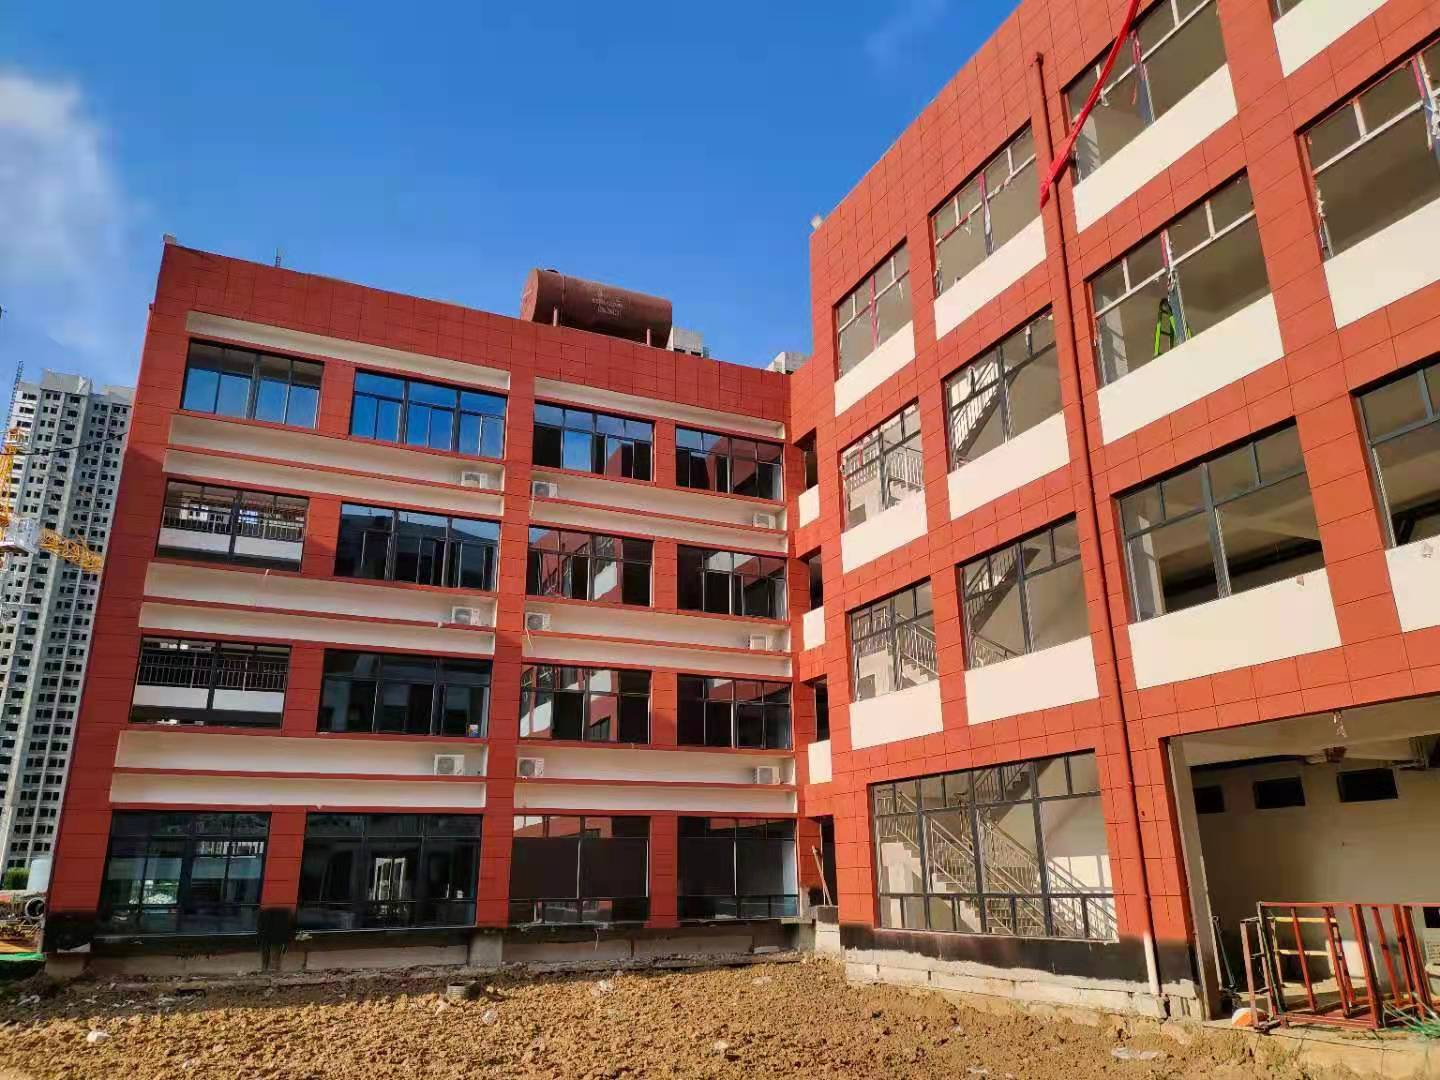 临渭区教育局多措并举确保新建学校幼儿园顺利开学